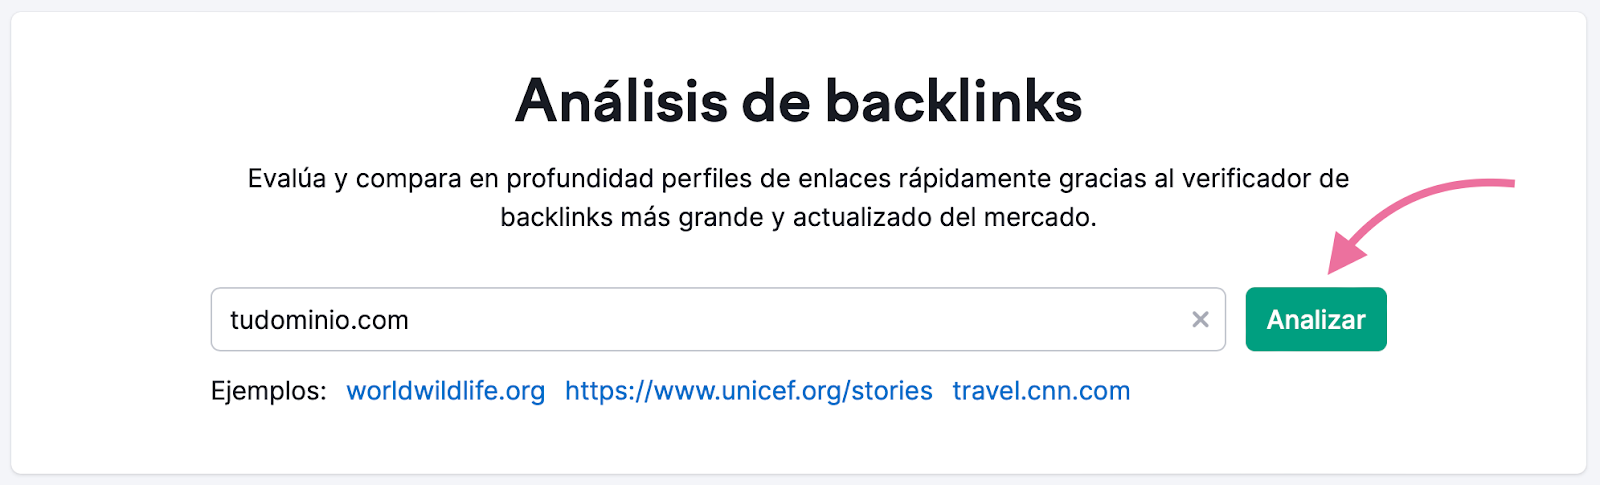 Análisis de backlinks